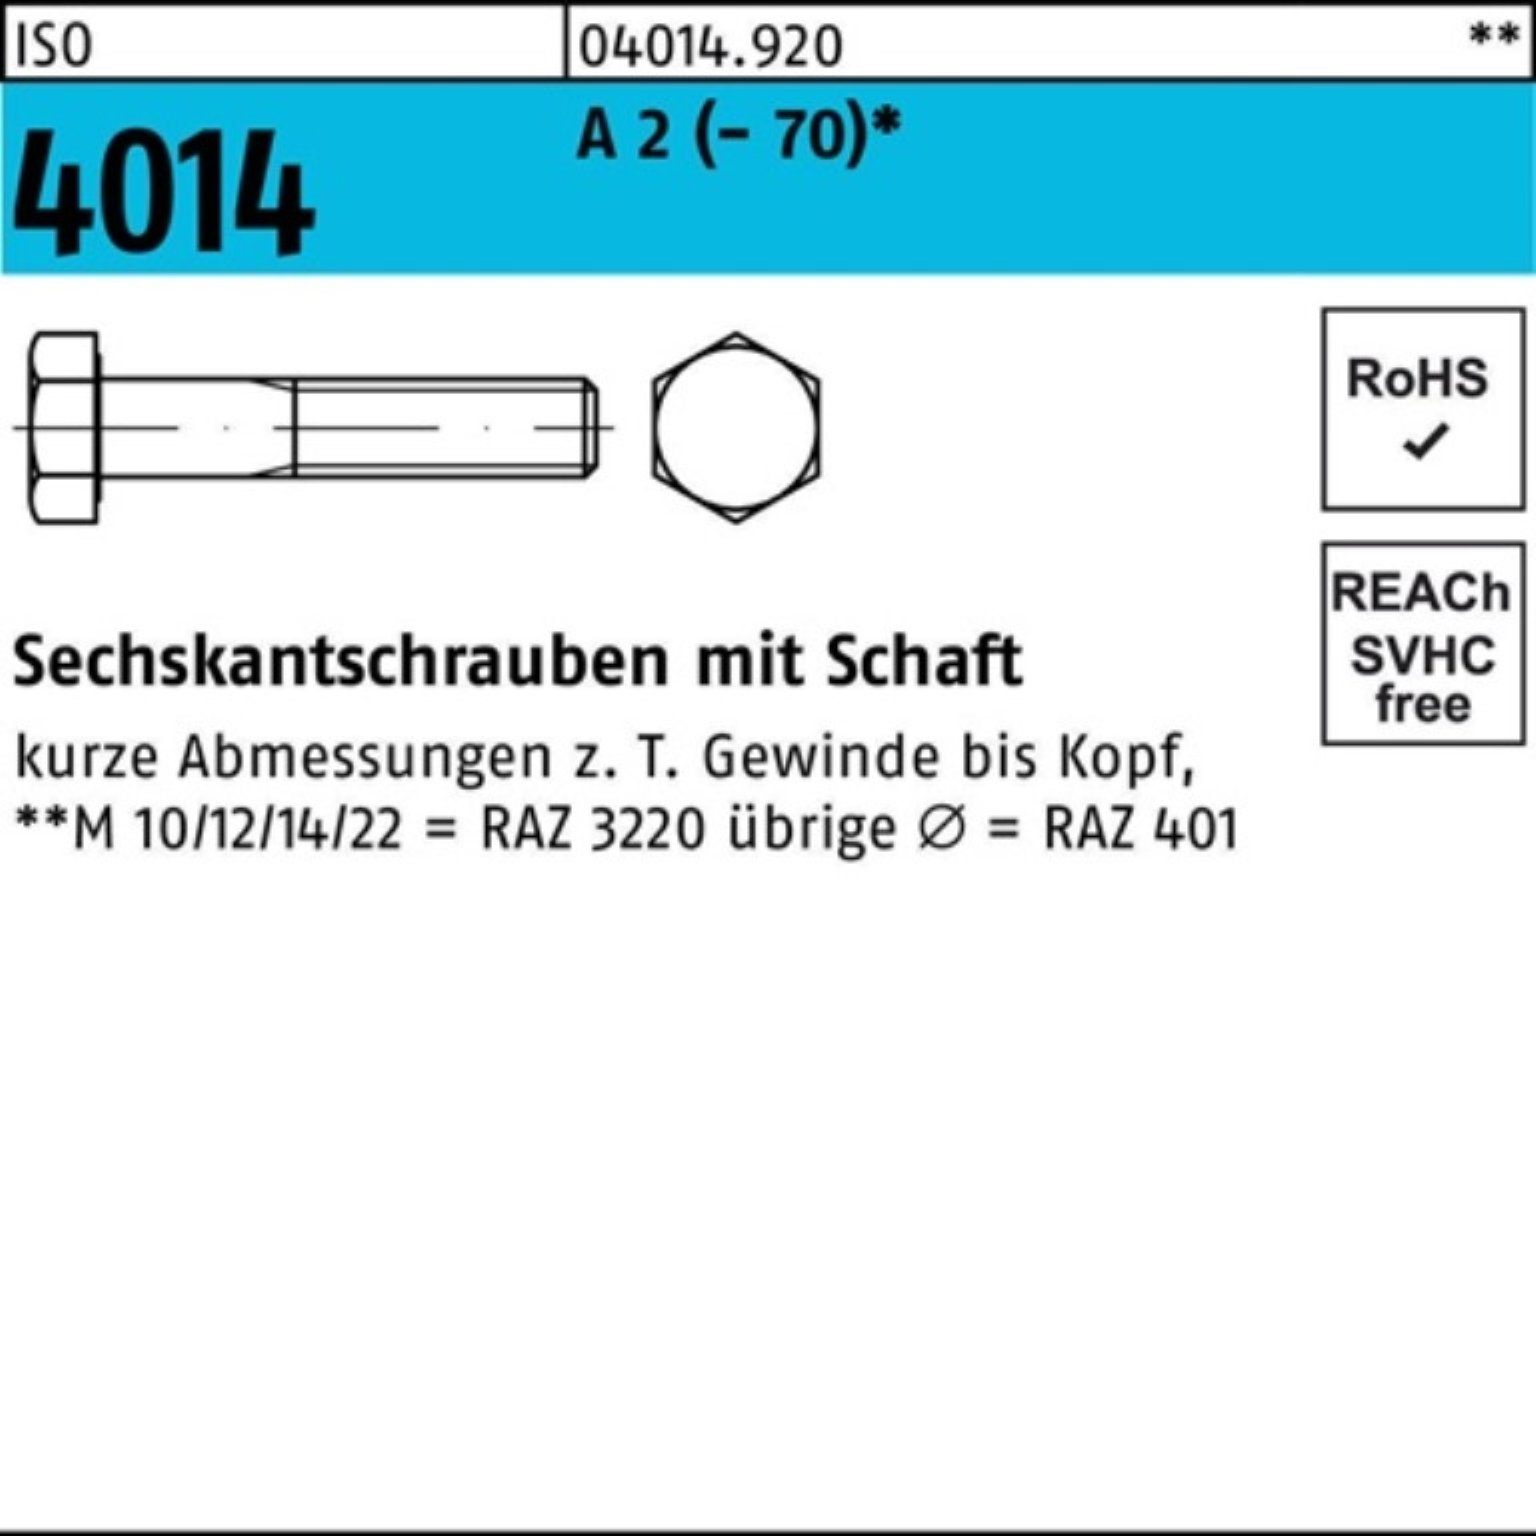 Bufab Sechskantschraube 100er Pack Sechskantschraube ISO 4014 Schaft M20x 75 A 2 (70) 1 Stü